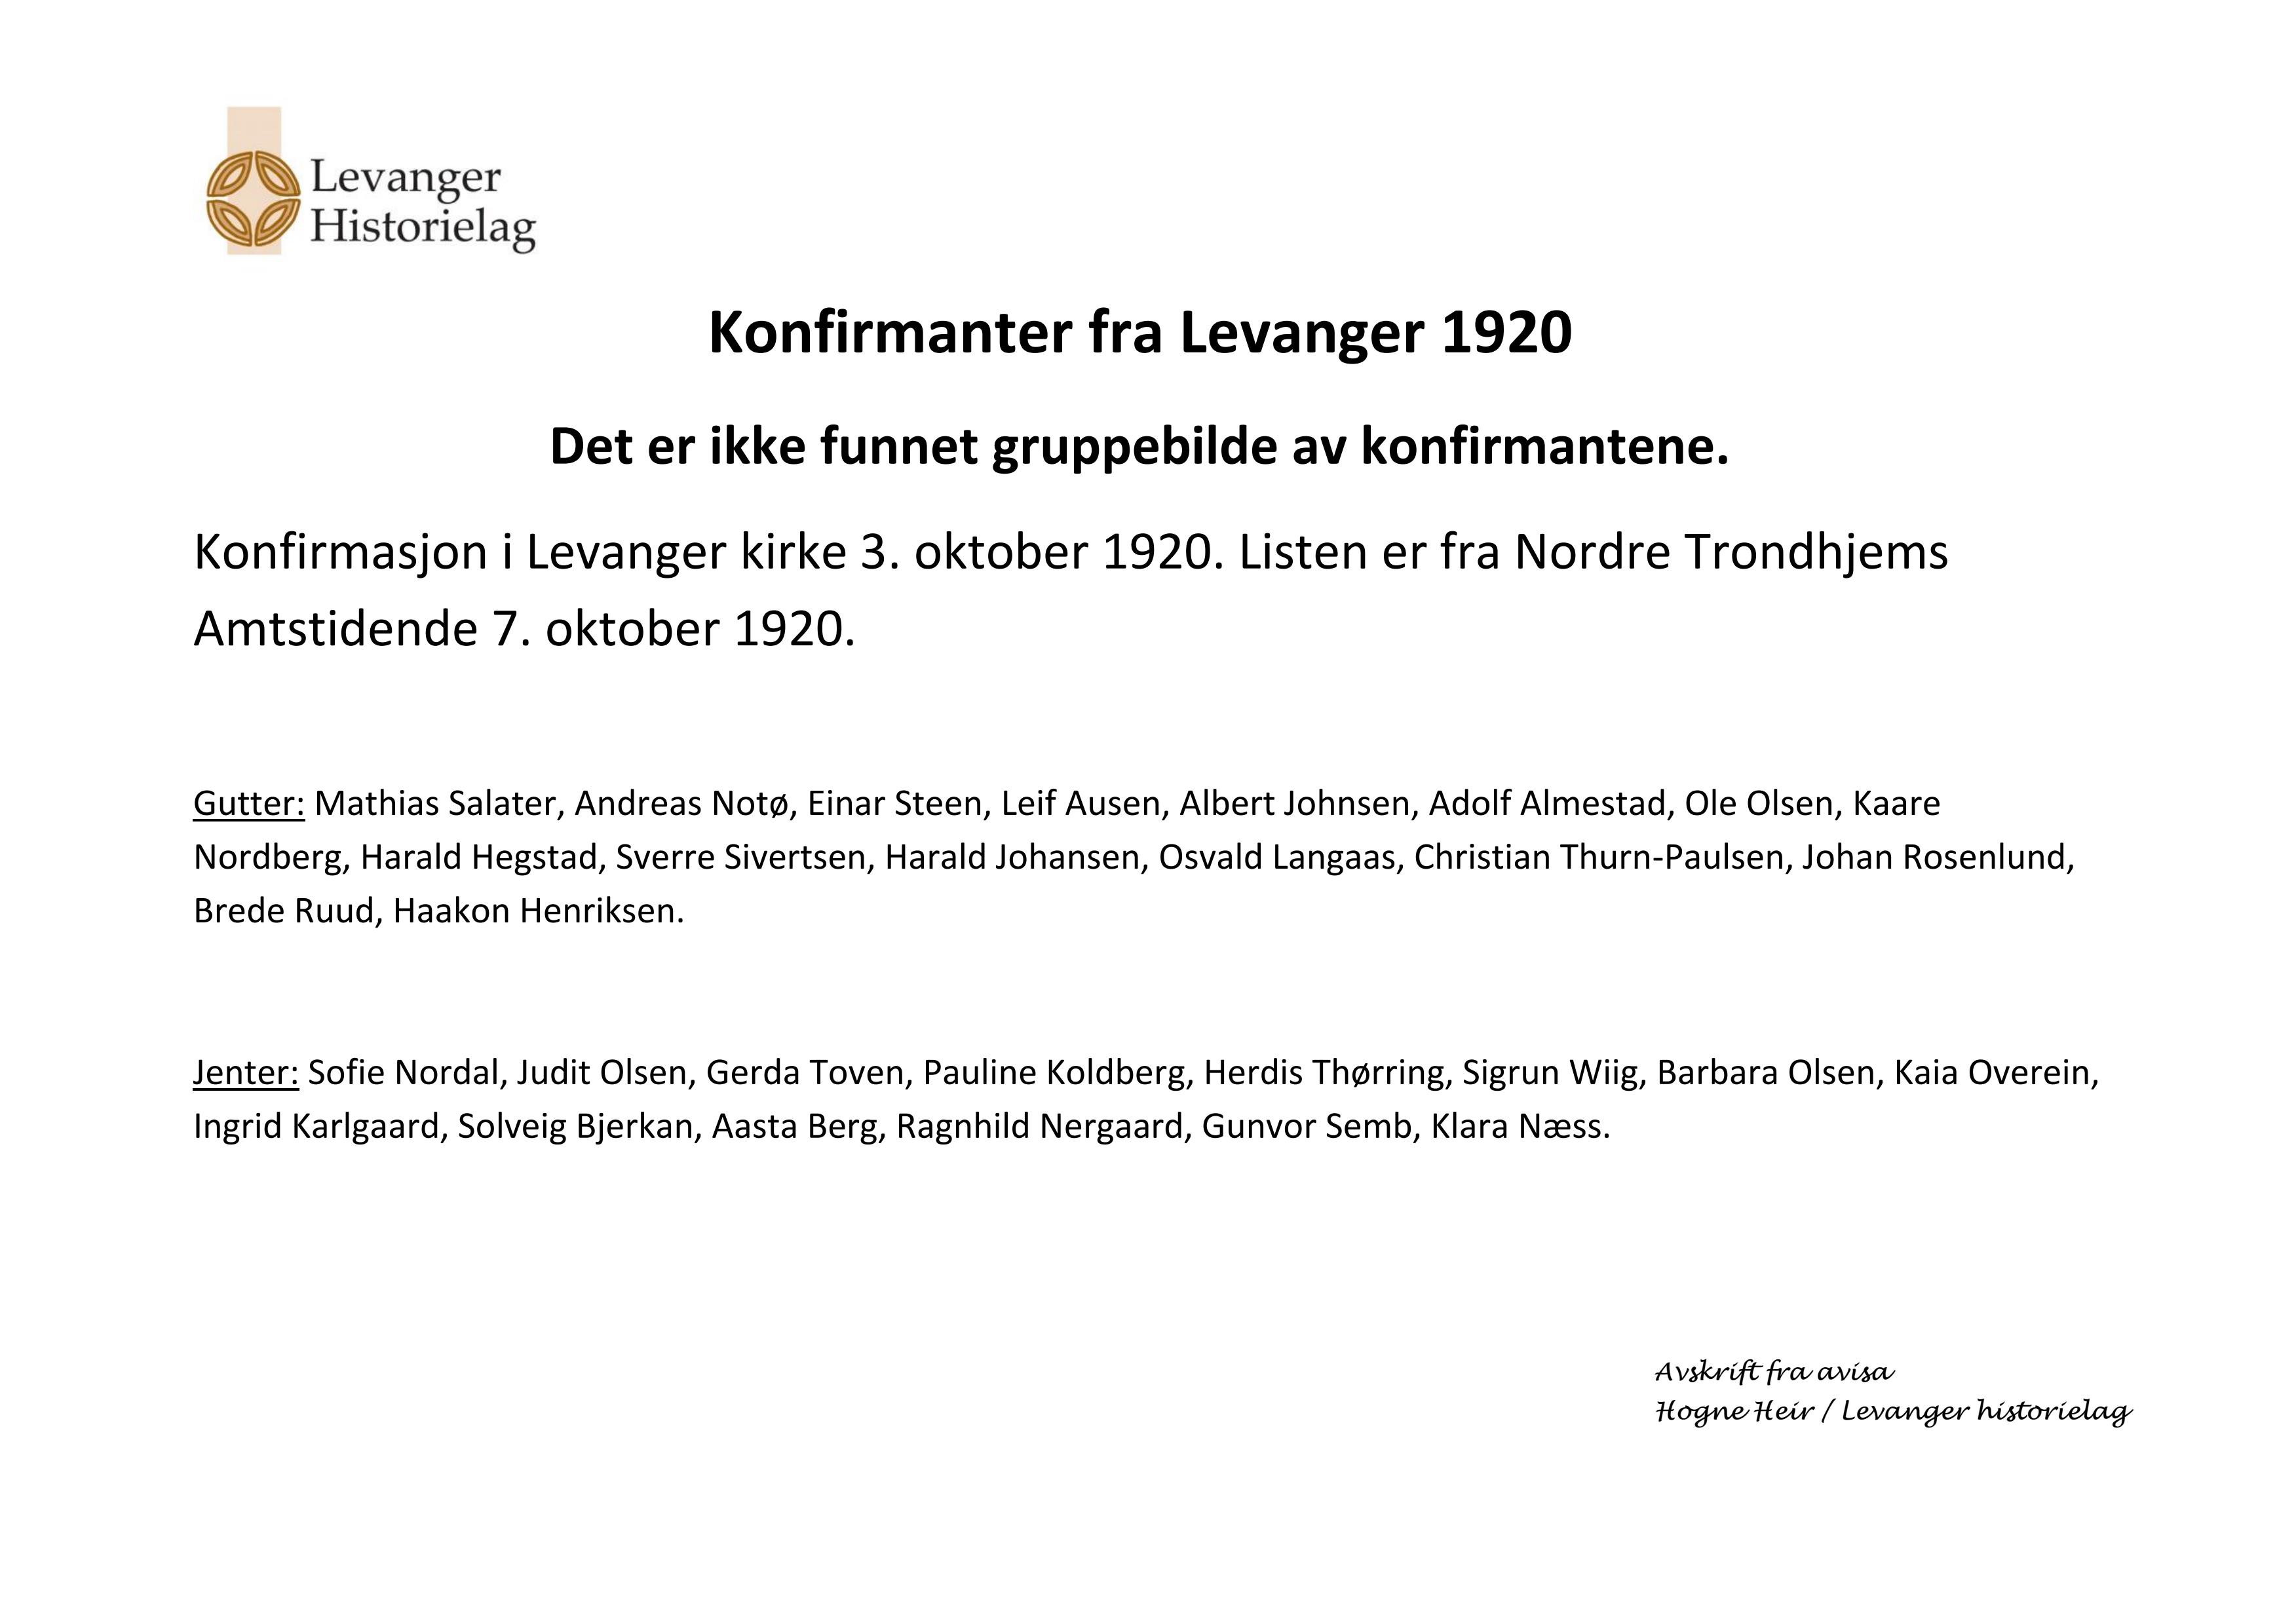 Konfirmanter fra Levanger i Levanger kirke 3. oktober 1920 - navneliste